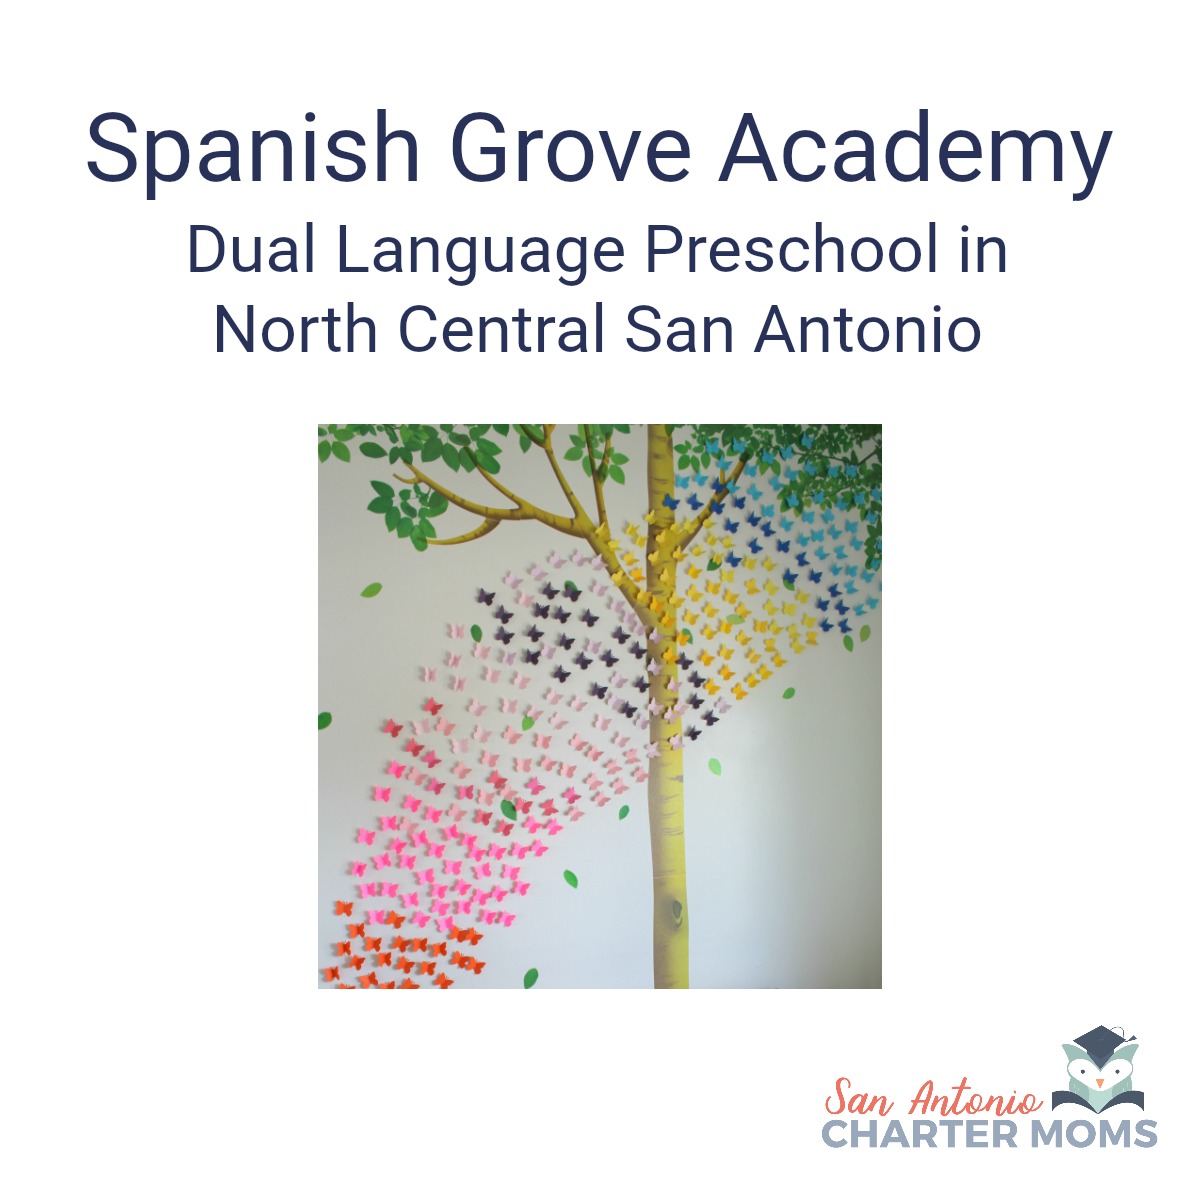 Spanish Grove Academy dual-language preschool in north central San Antonio | San Antonio Charter Moms